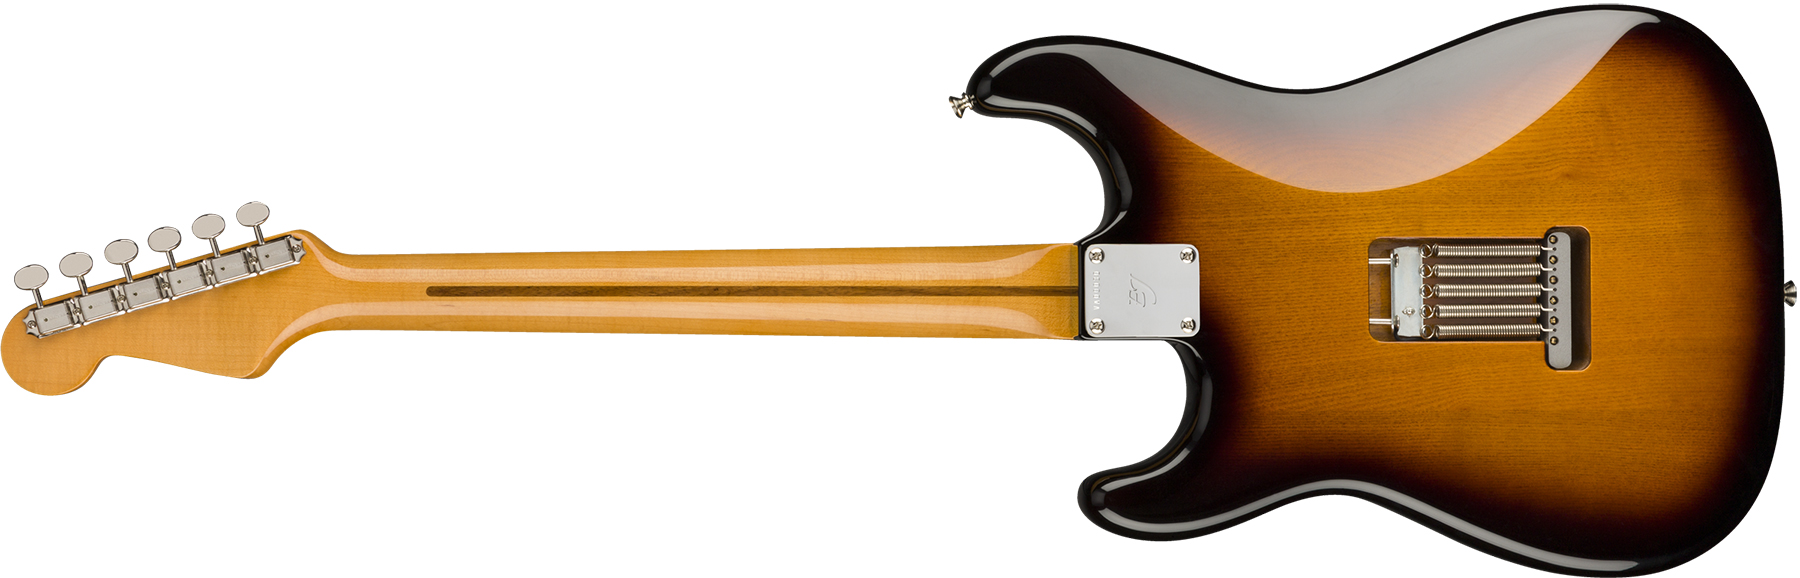 Fender Eric Johnson Strat 1954 Virginia Stories Collection Usa Signature Mn - 2-color Sunburst - Guitare Électrique Forme Str - Variation 1